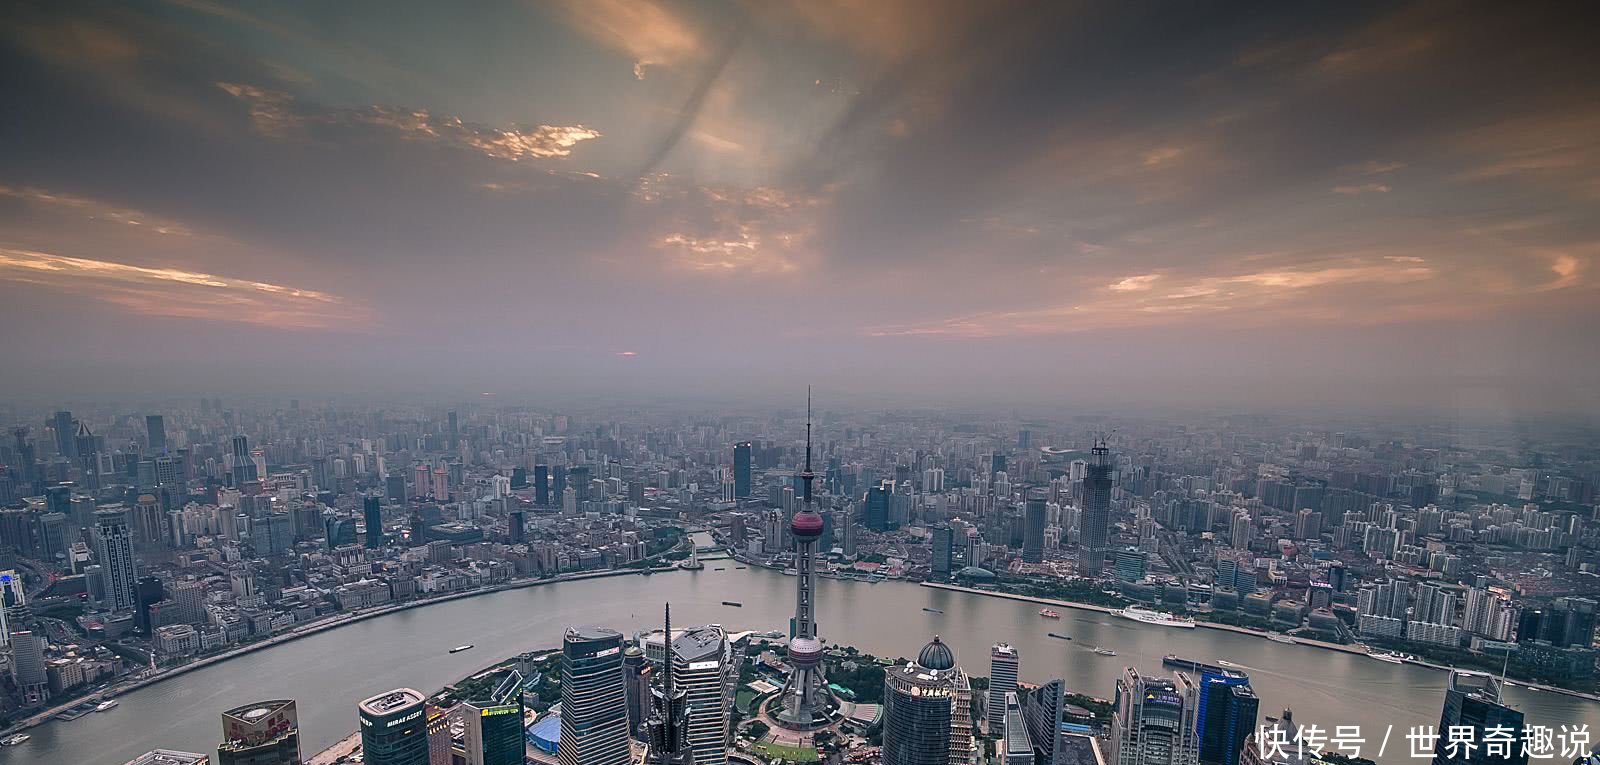 印度的首都孟买想与上海媲美,中国人调侃:先把